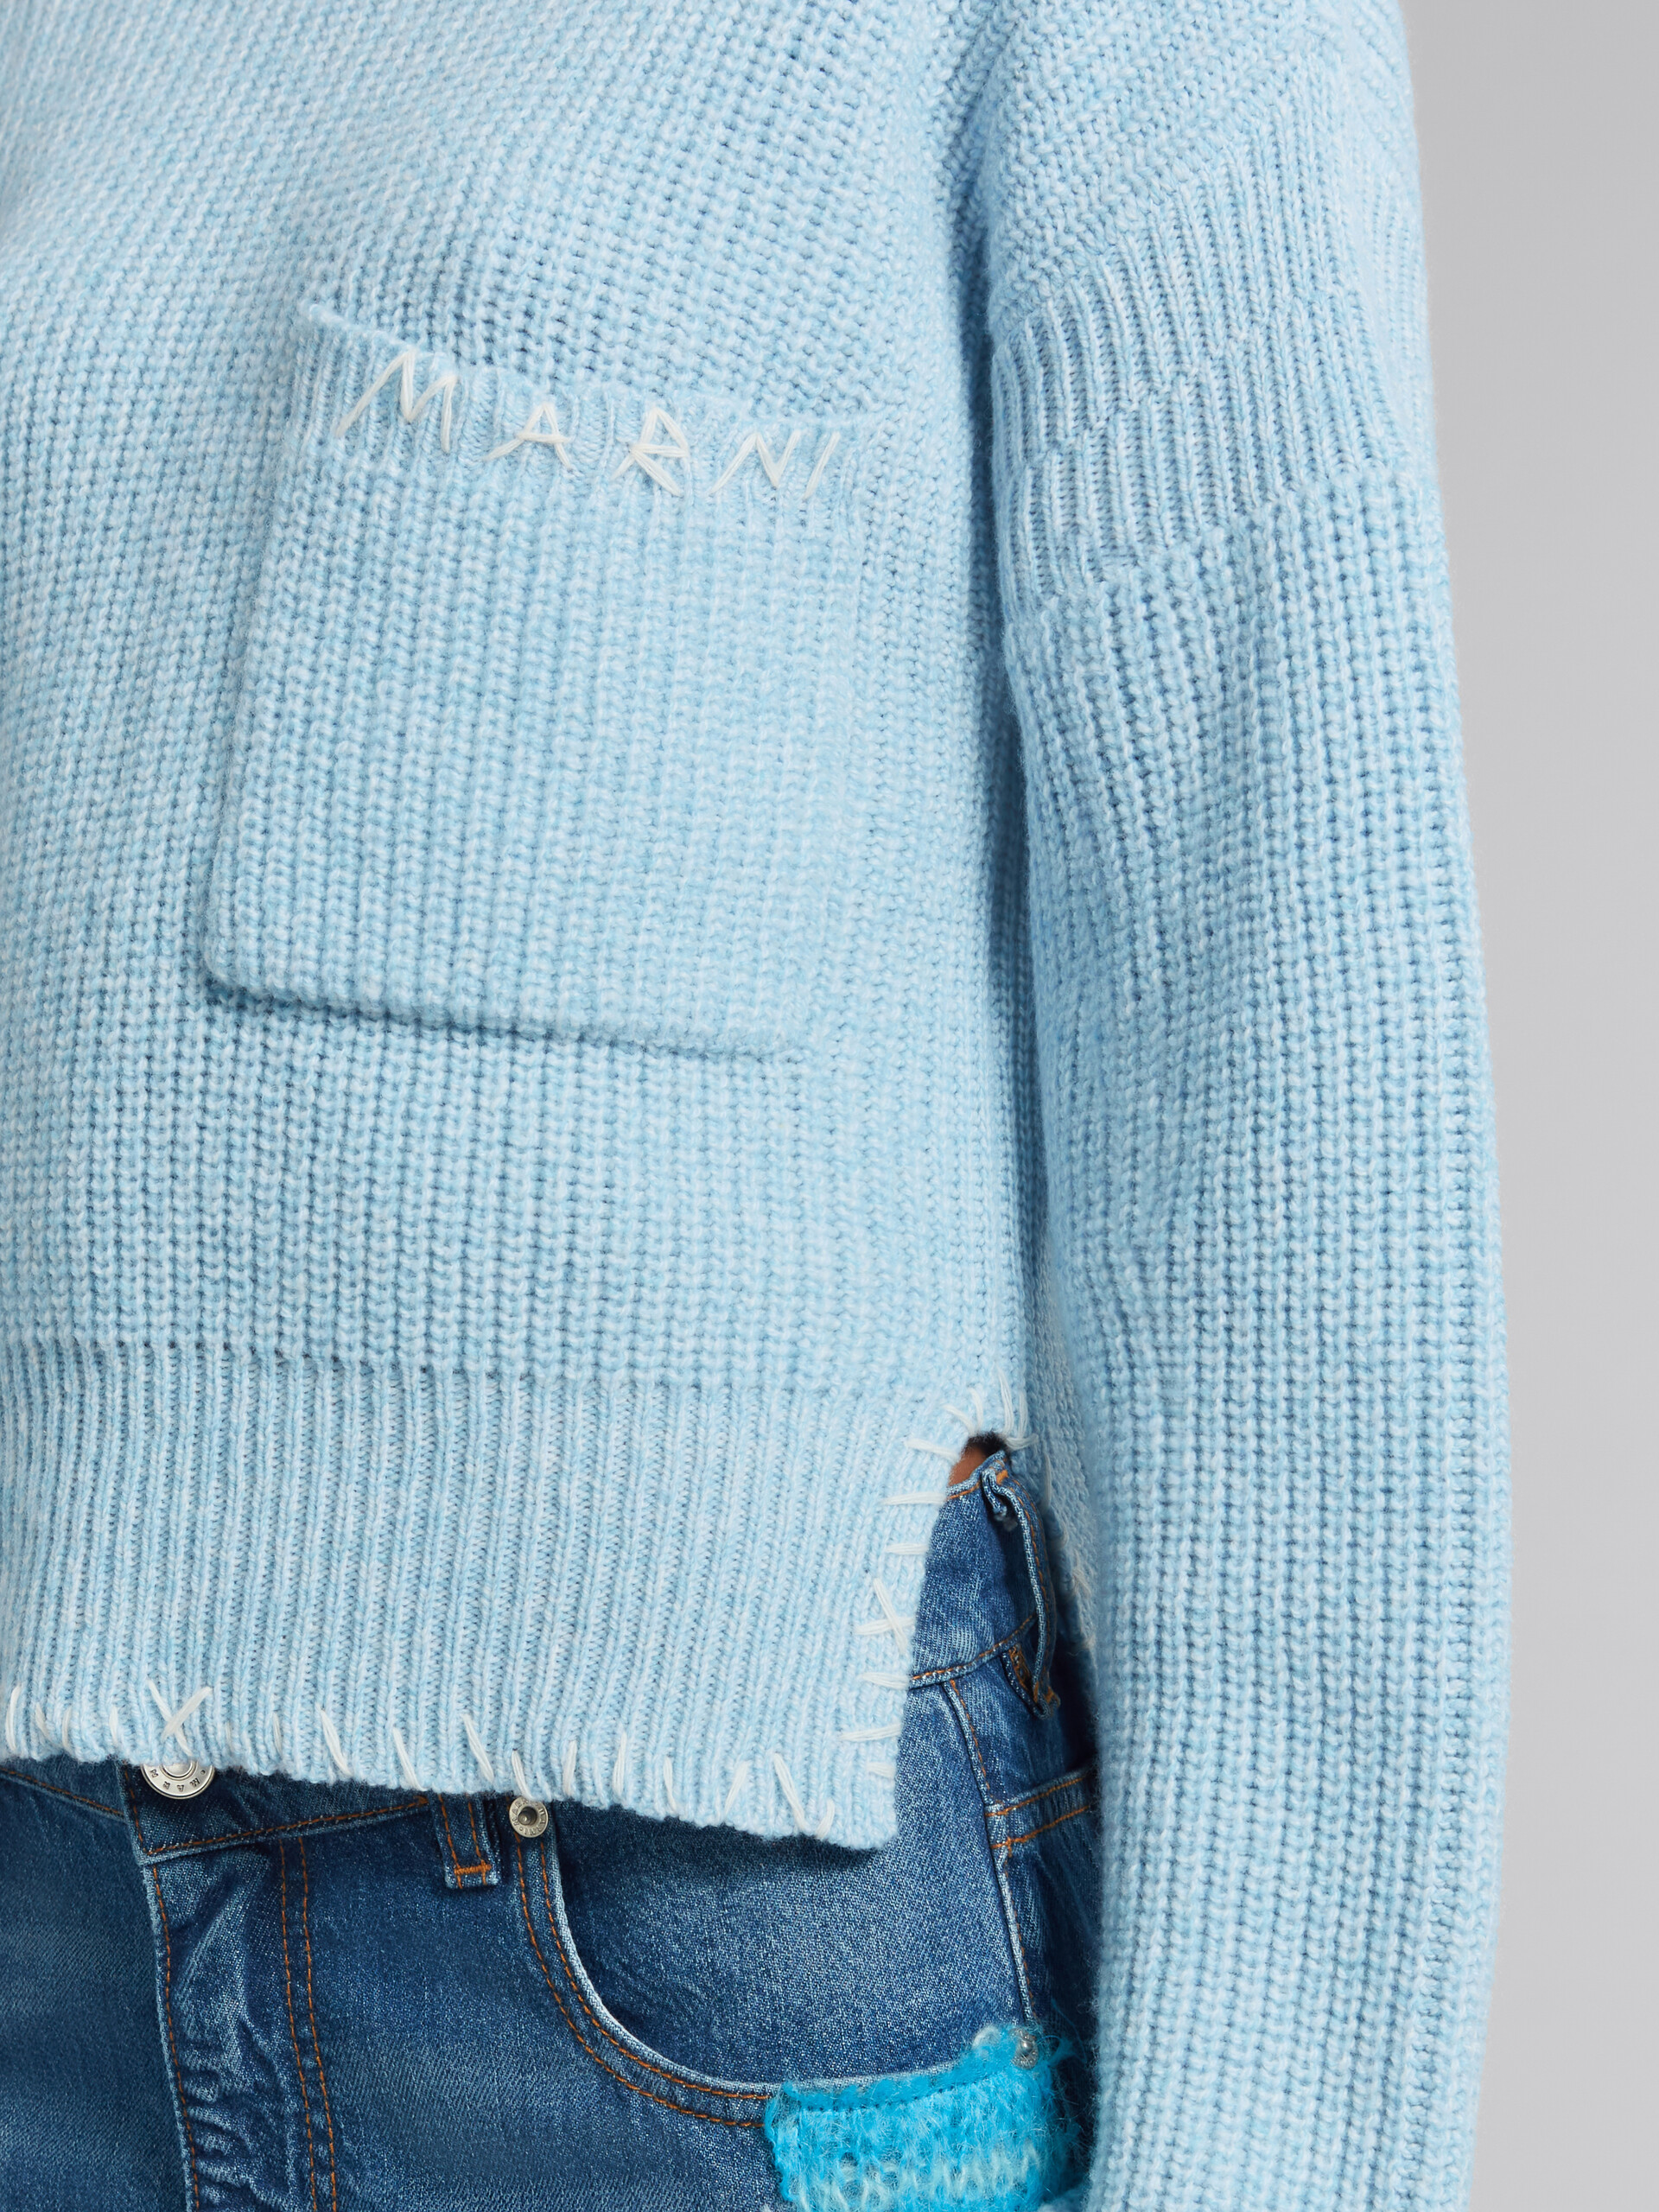 Jersey azul de mouliné con efecto remiendo - jerseys - Image 4